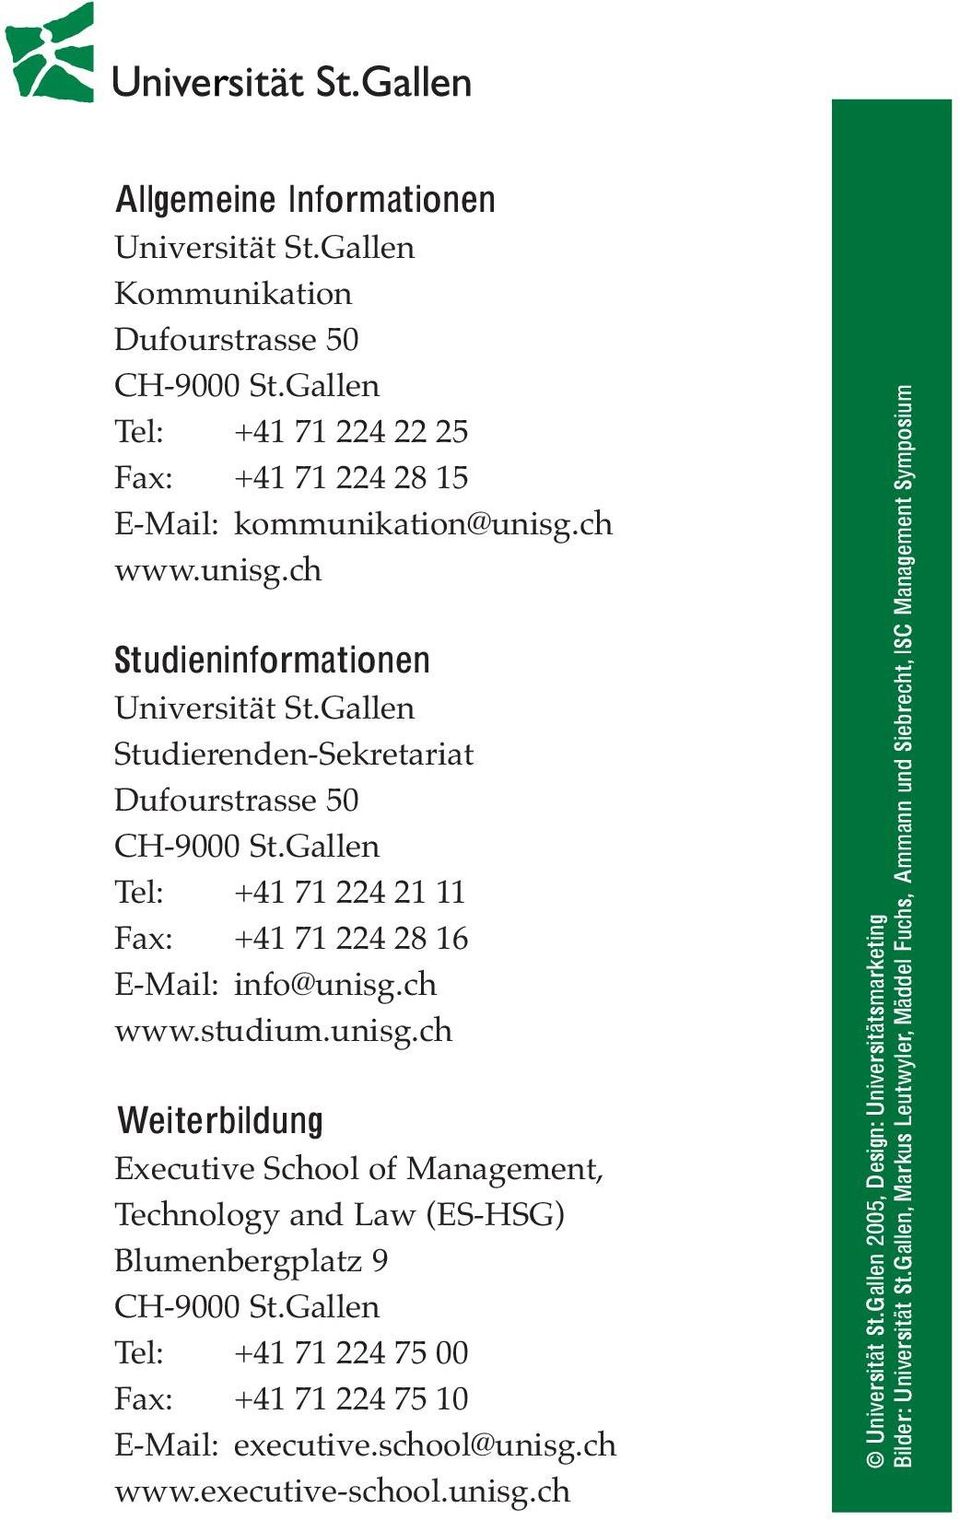 unisg.ch Weiterbildung Executive School of Management, Technology and Law (ES-HSG) Blumenbergplatz 9 CH-9000 St.Gallen Tel: +41 71 224 75 00 Fax: +41 71 224 75 10 E-Mail: executive.